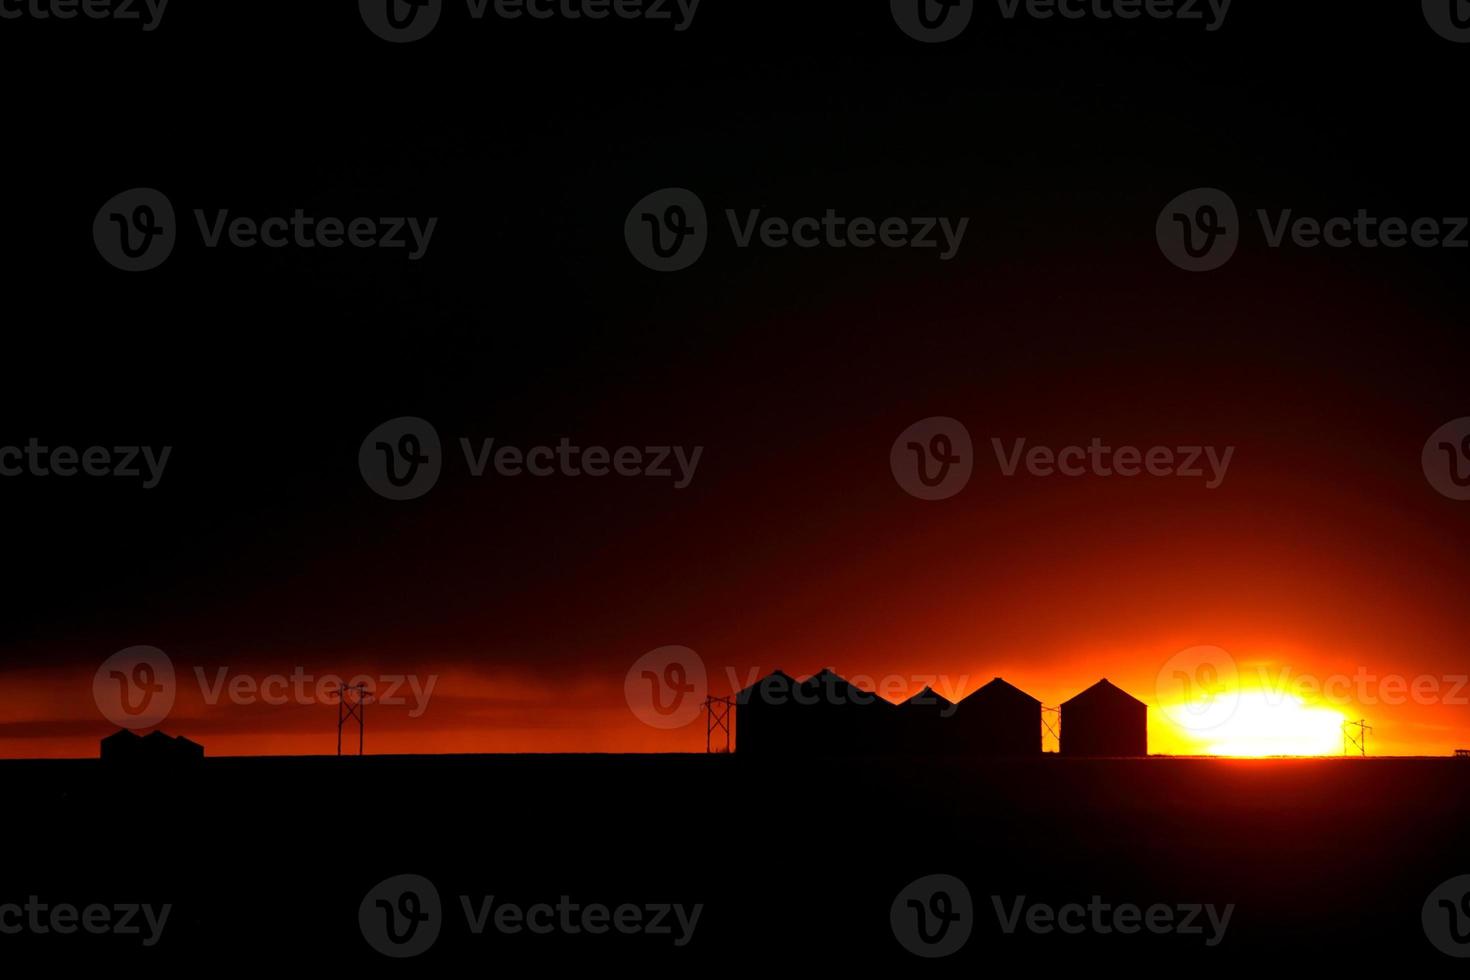 puesta de sol detrás de graneros de metal en saskatchewan foto